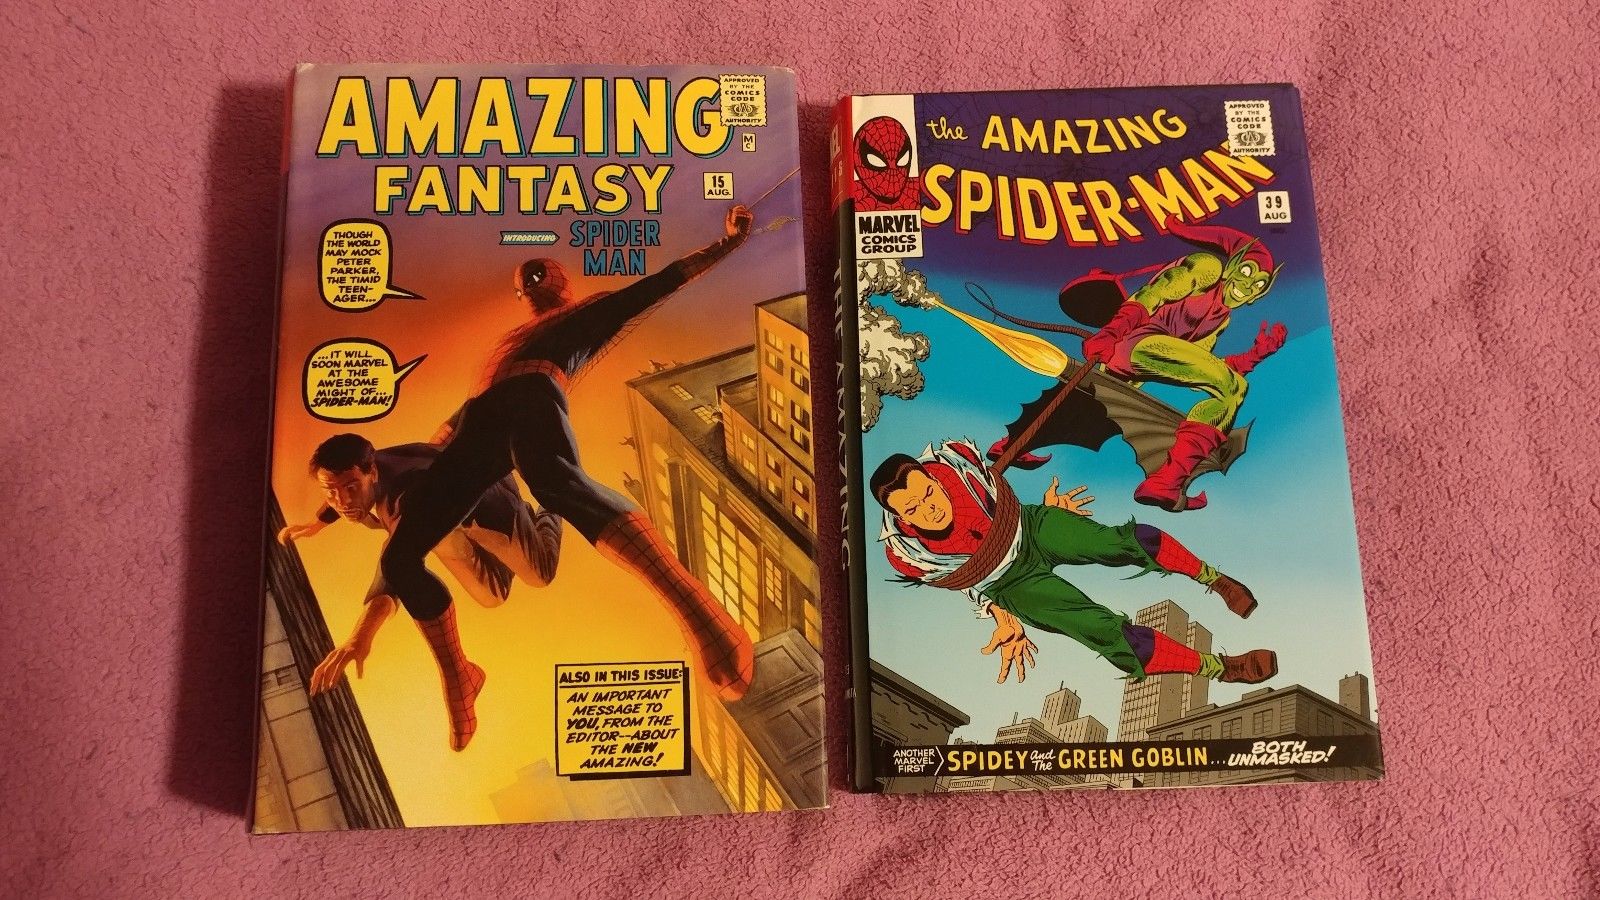 Marvel Amazing Spider-Man Omnibus Vol 1 and 2.